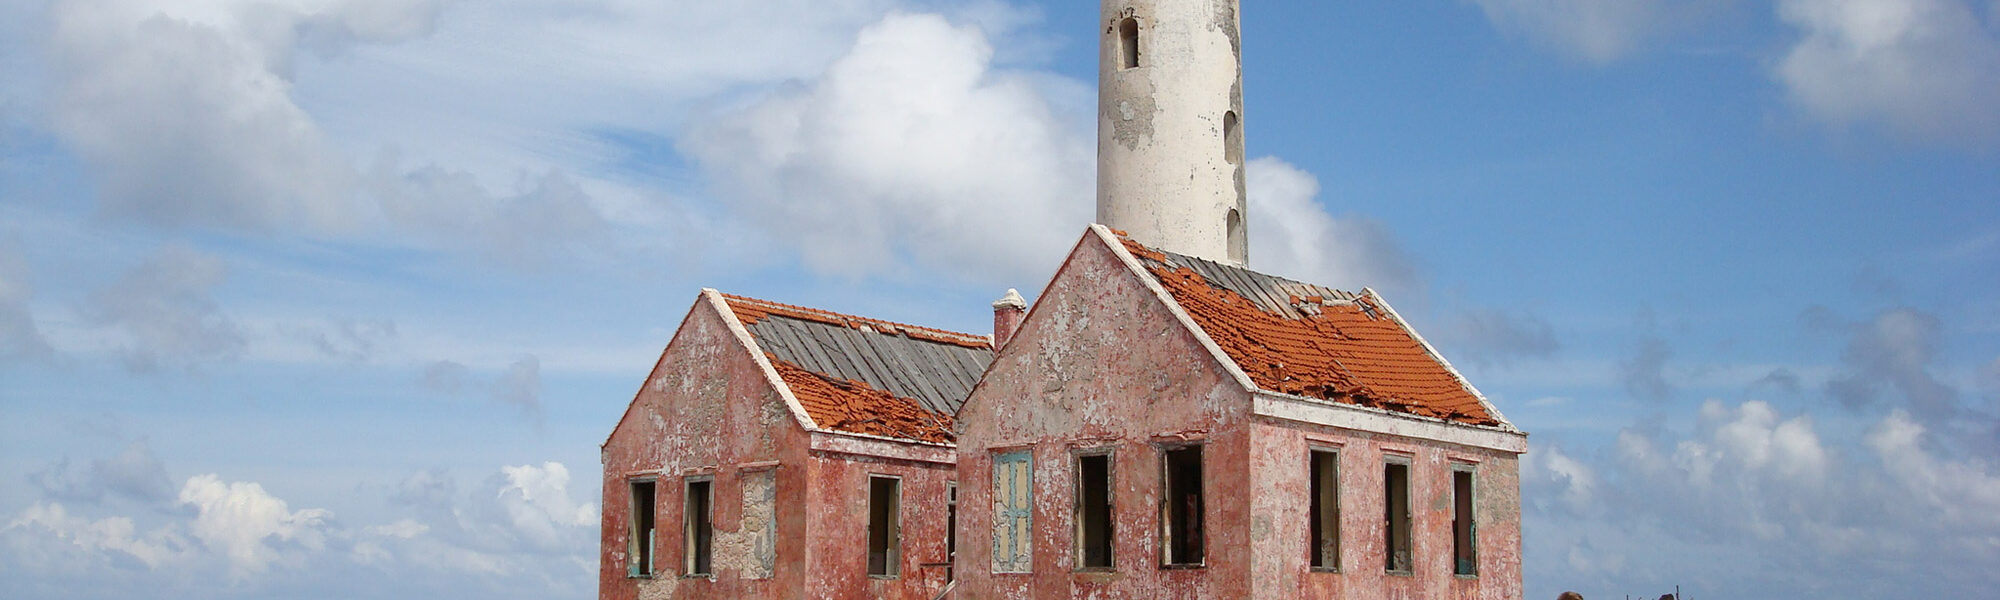 Klein Curaçao - Curaçao